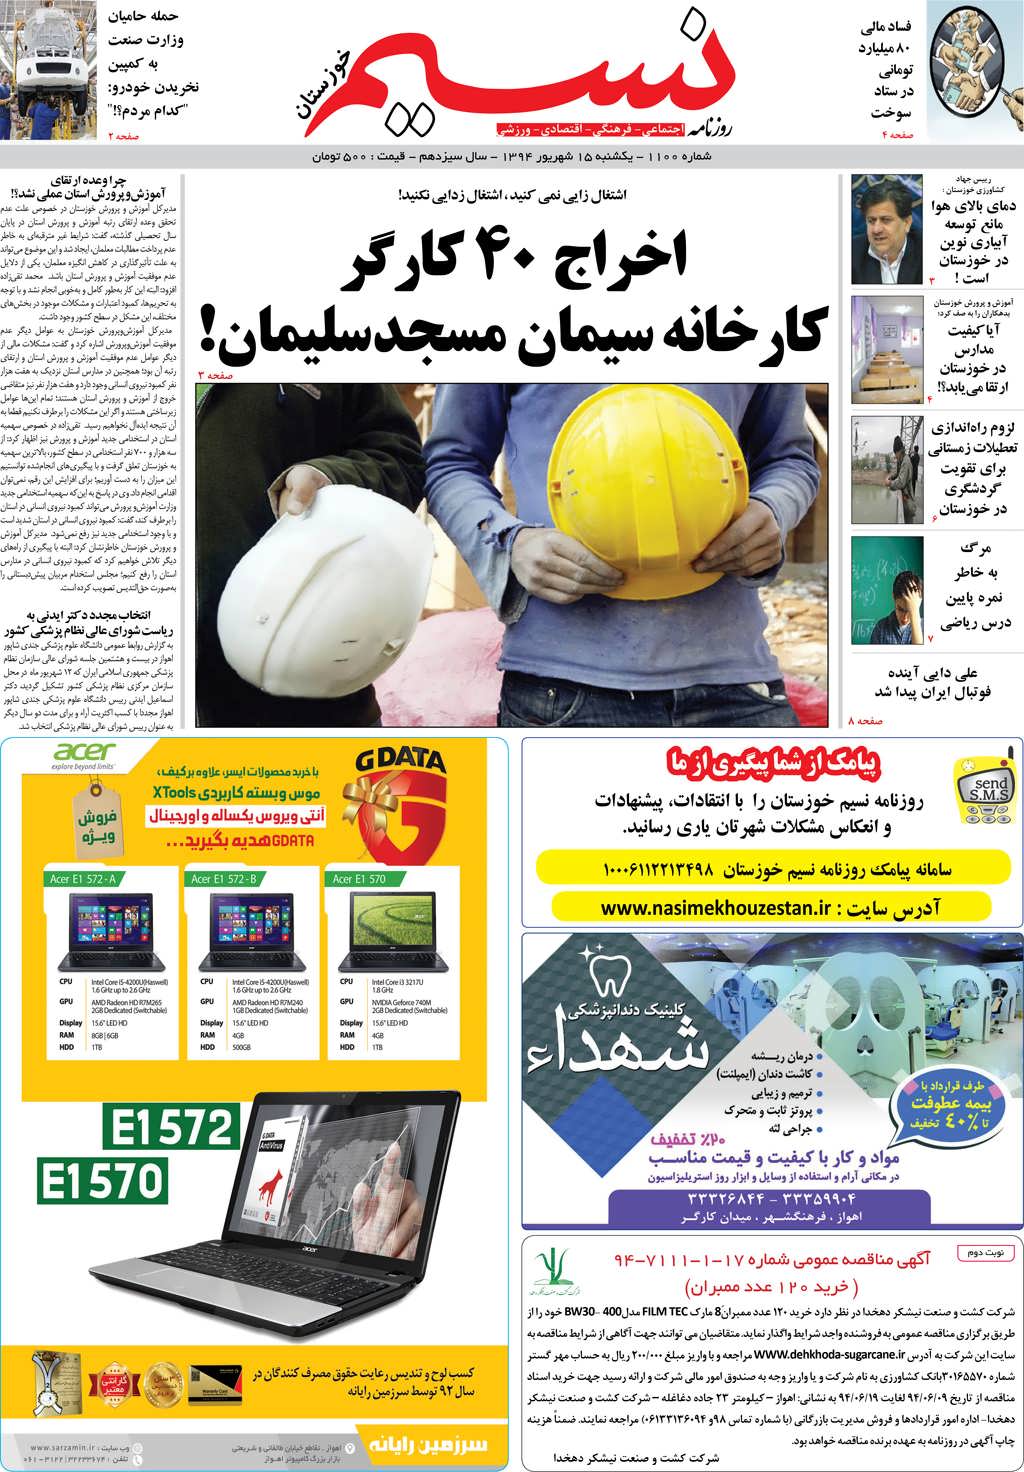 صفحه اصلی روزنامه نسیم شماره 1100